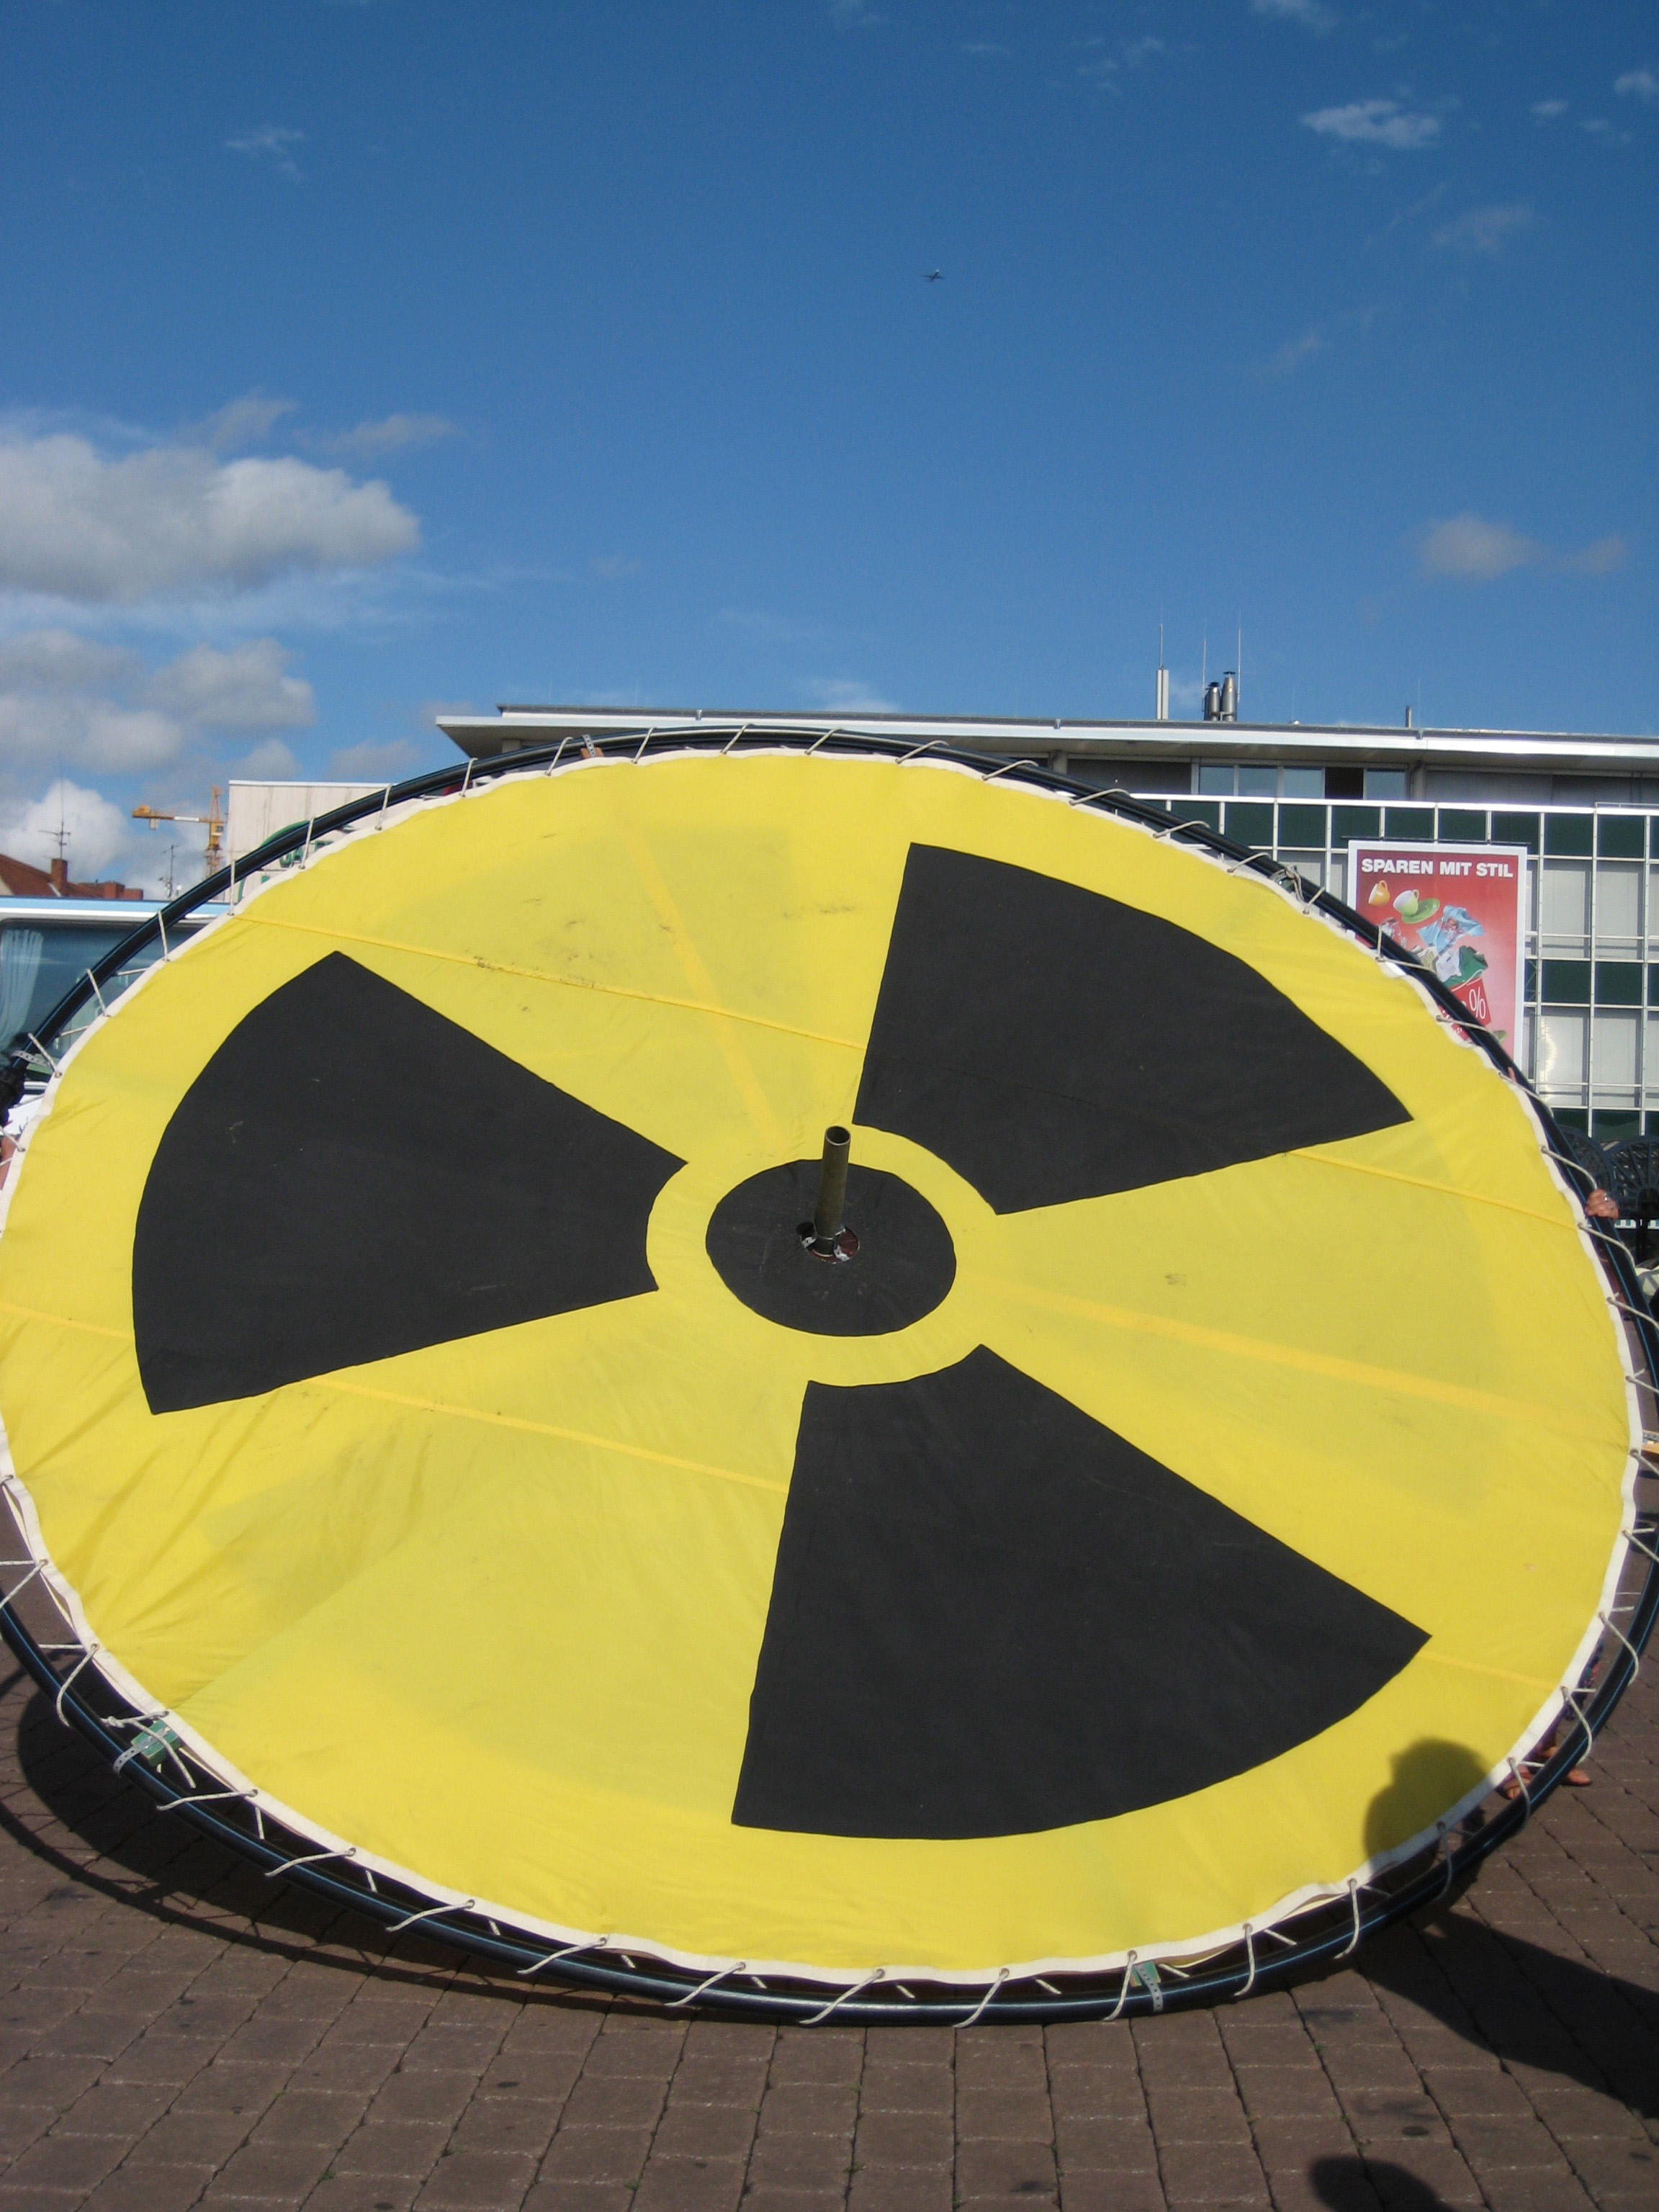 Die Mahnung von Tschernobyl – weiteres Leid verhindern, deshalb Erneuerbare Energien nutzen